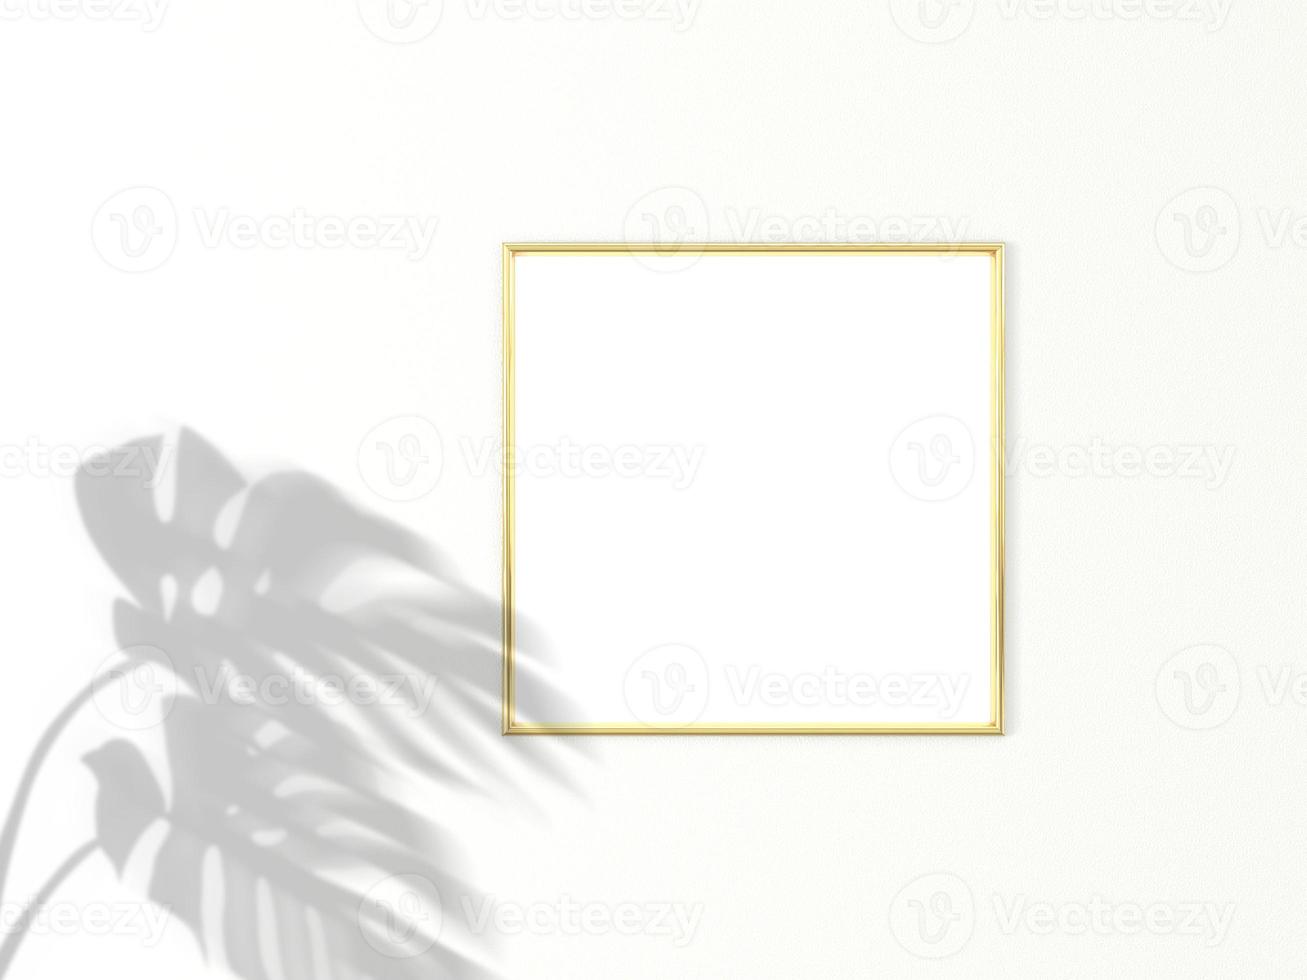 Marco de oro cuadrado 1x1 para maqueta de foto o imagen sobre fondo blanco con sombra de hojas de monstera. representación 3d